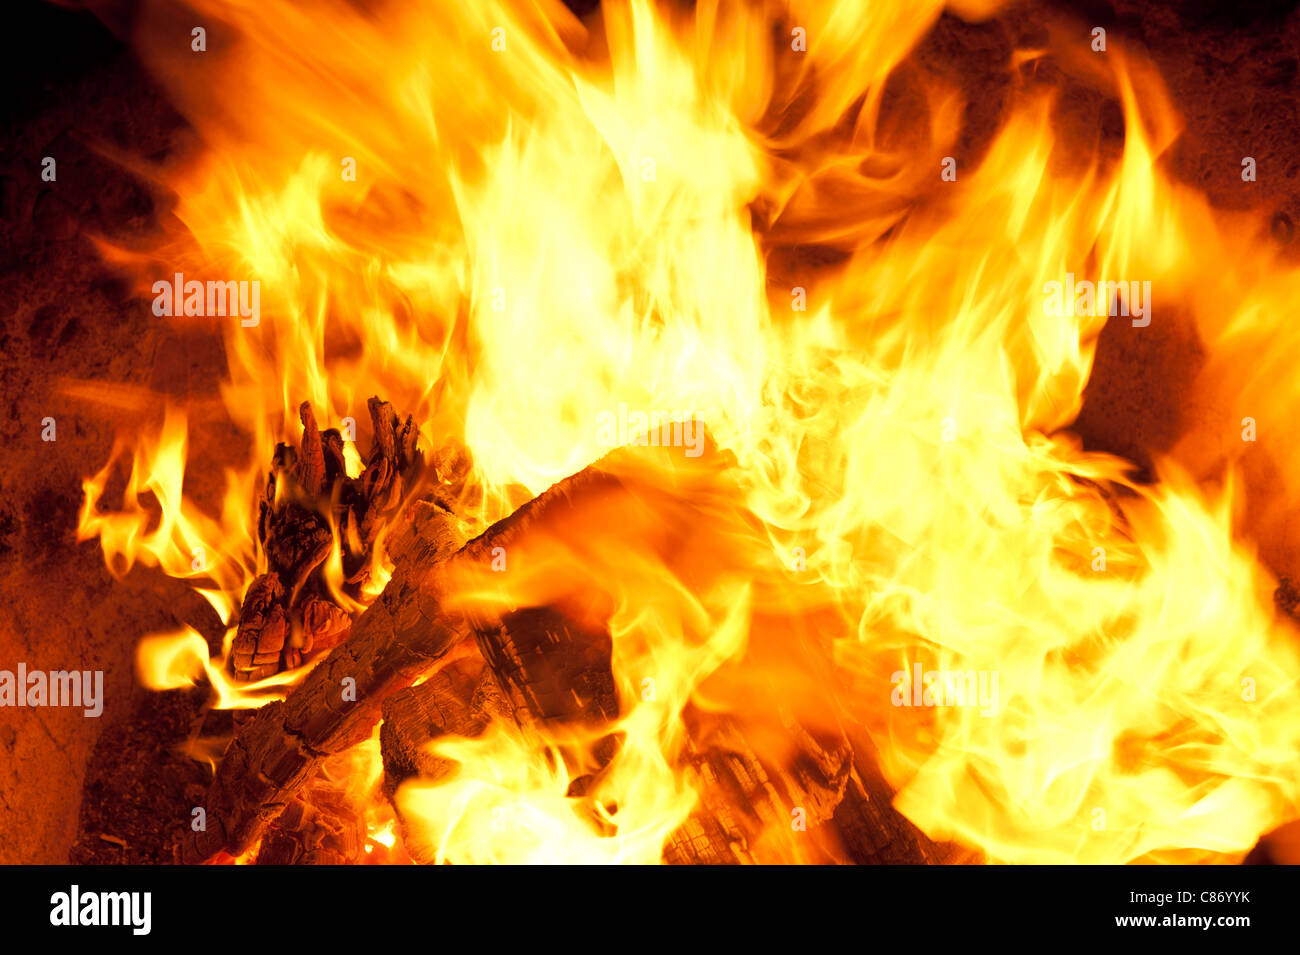 Nahaufnahme von Brennholz Feuer und Flammen. Bild zeigt die verkohlten Holz und helle Flammen. Stockfoto